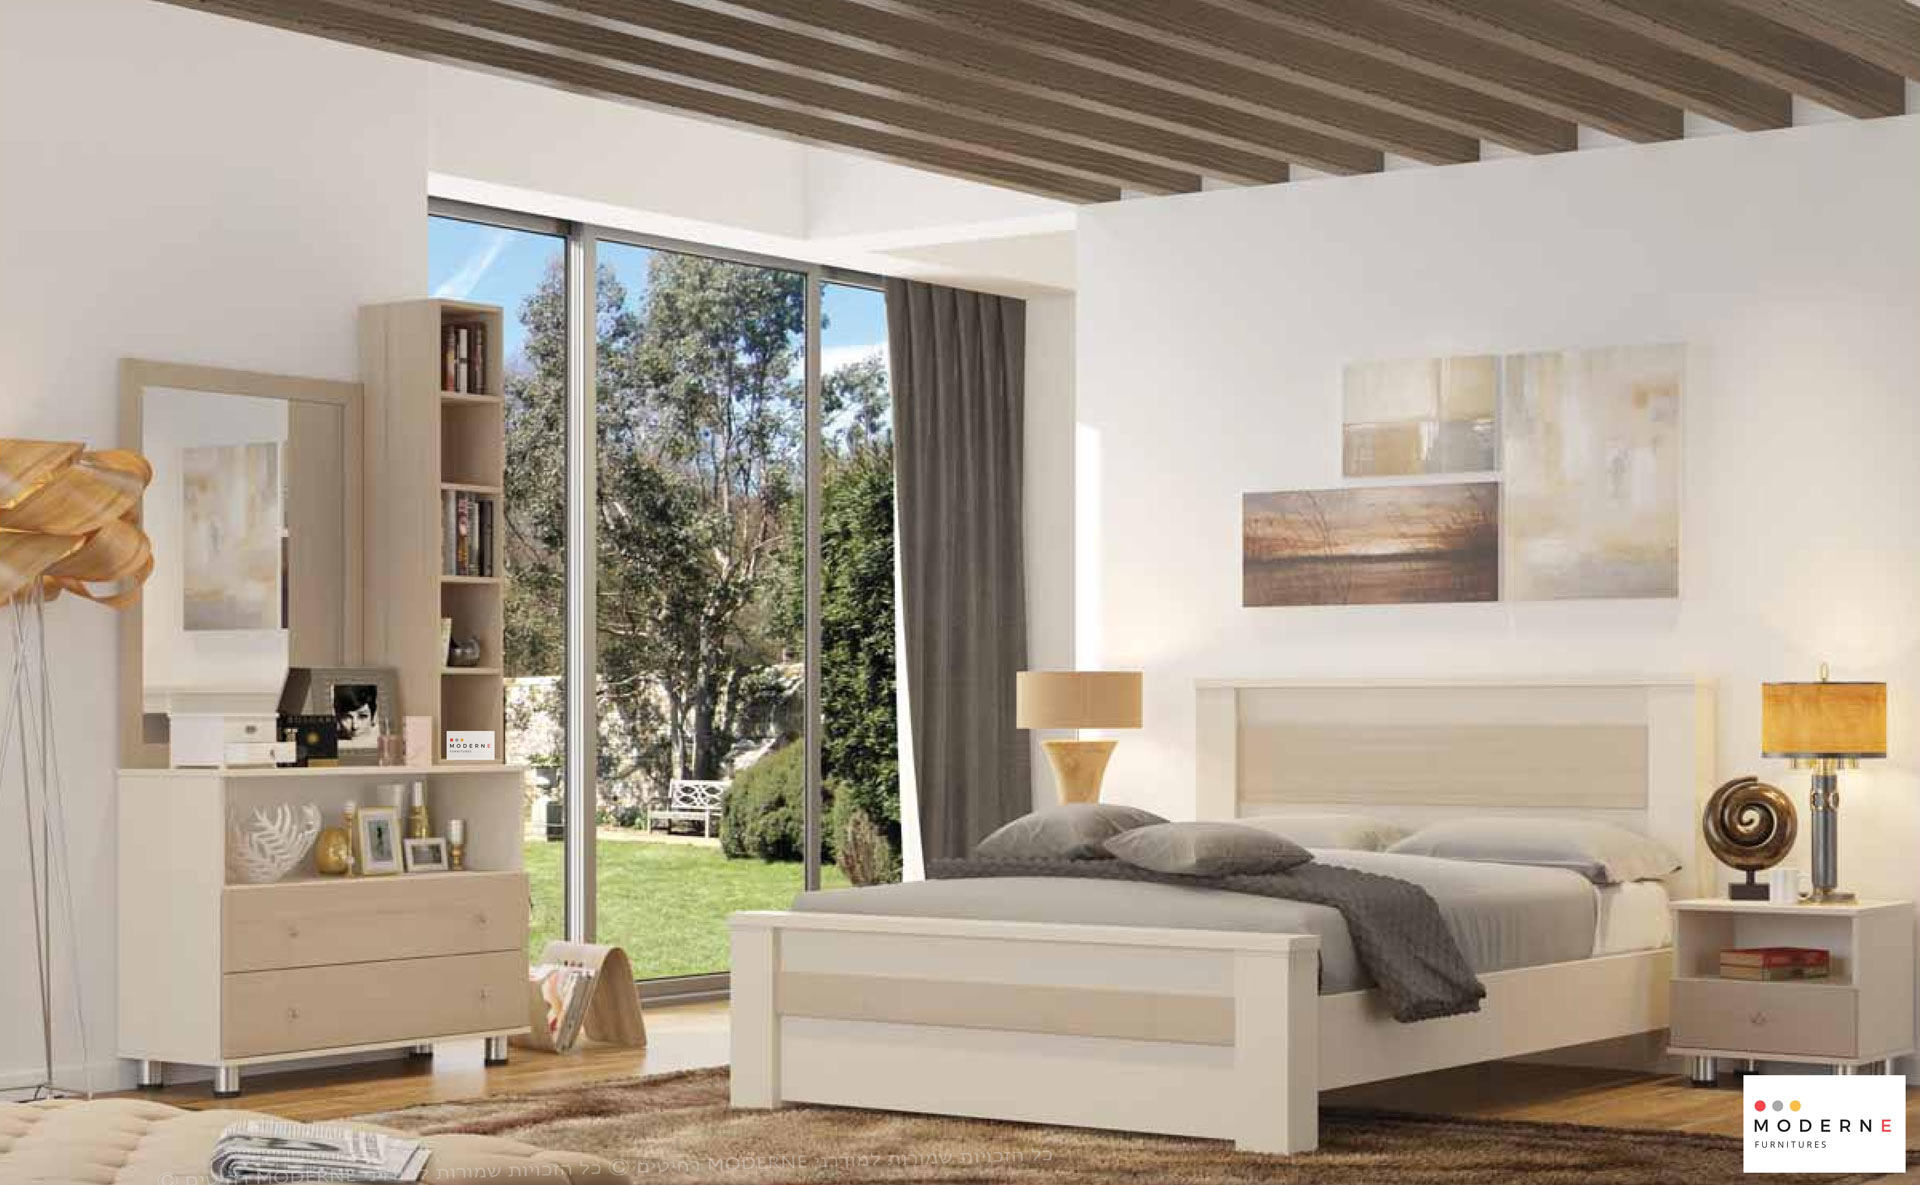 חדר שינה קומפלט דגם פאולו הכולל מיטה זוגית ,2 שידות לילה ,קומודה ומראה ,בצבע מולבן בשילוב חום בהיר ,נמצא באתר מודרני moderne.co.il